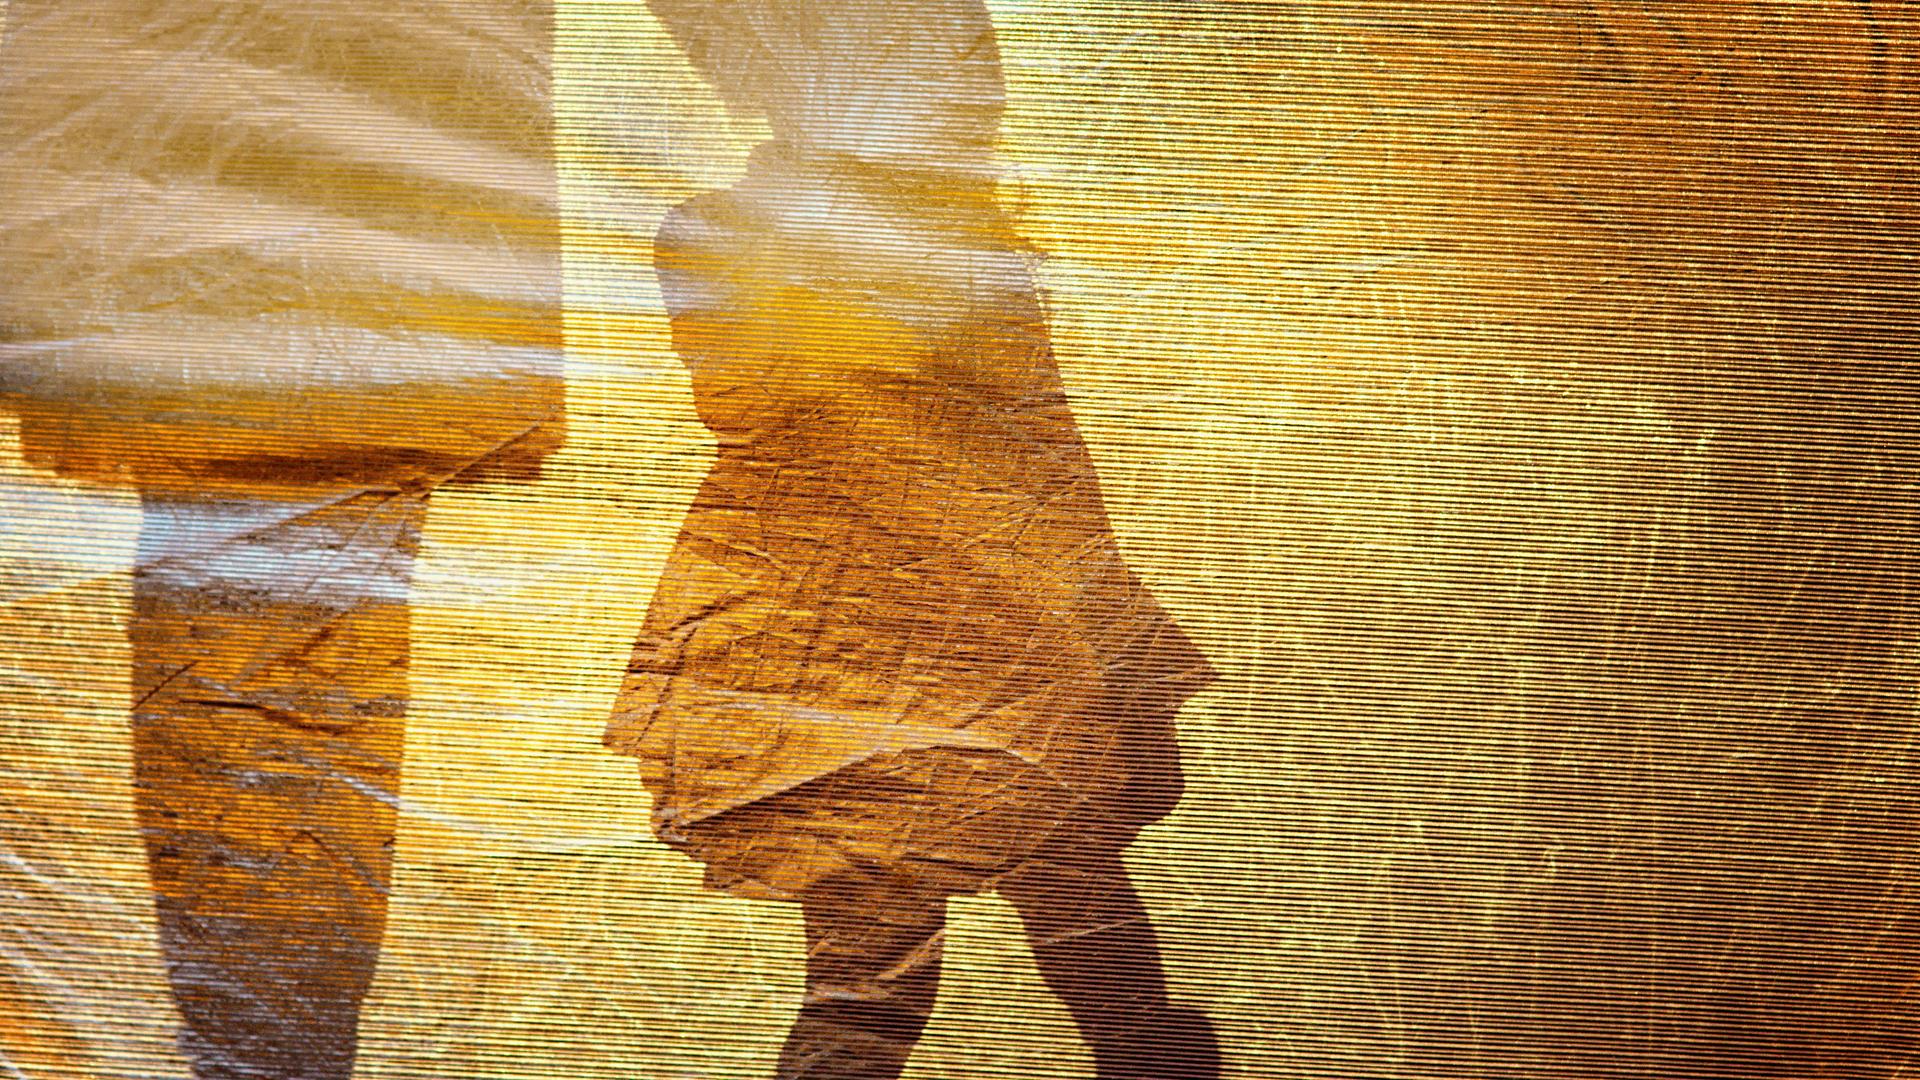 Der Schatten eines kleinen Mädchens an der Hand einer erwachsenen Person bildet sich auf einer goldfarbenen Oberfläche ab.